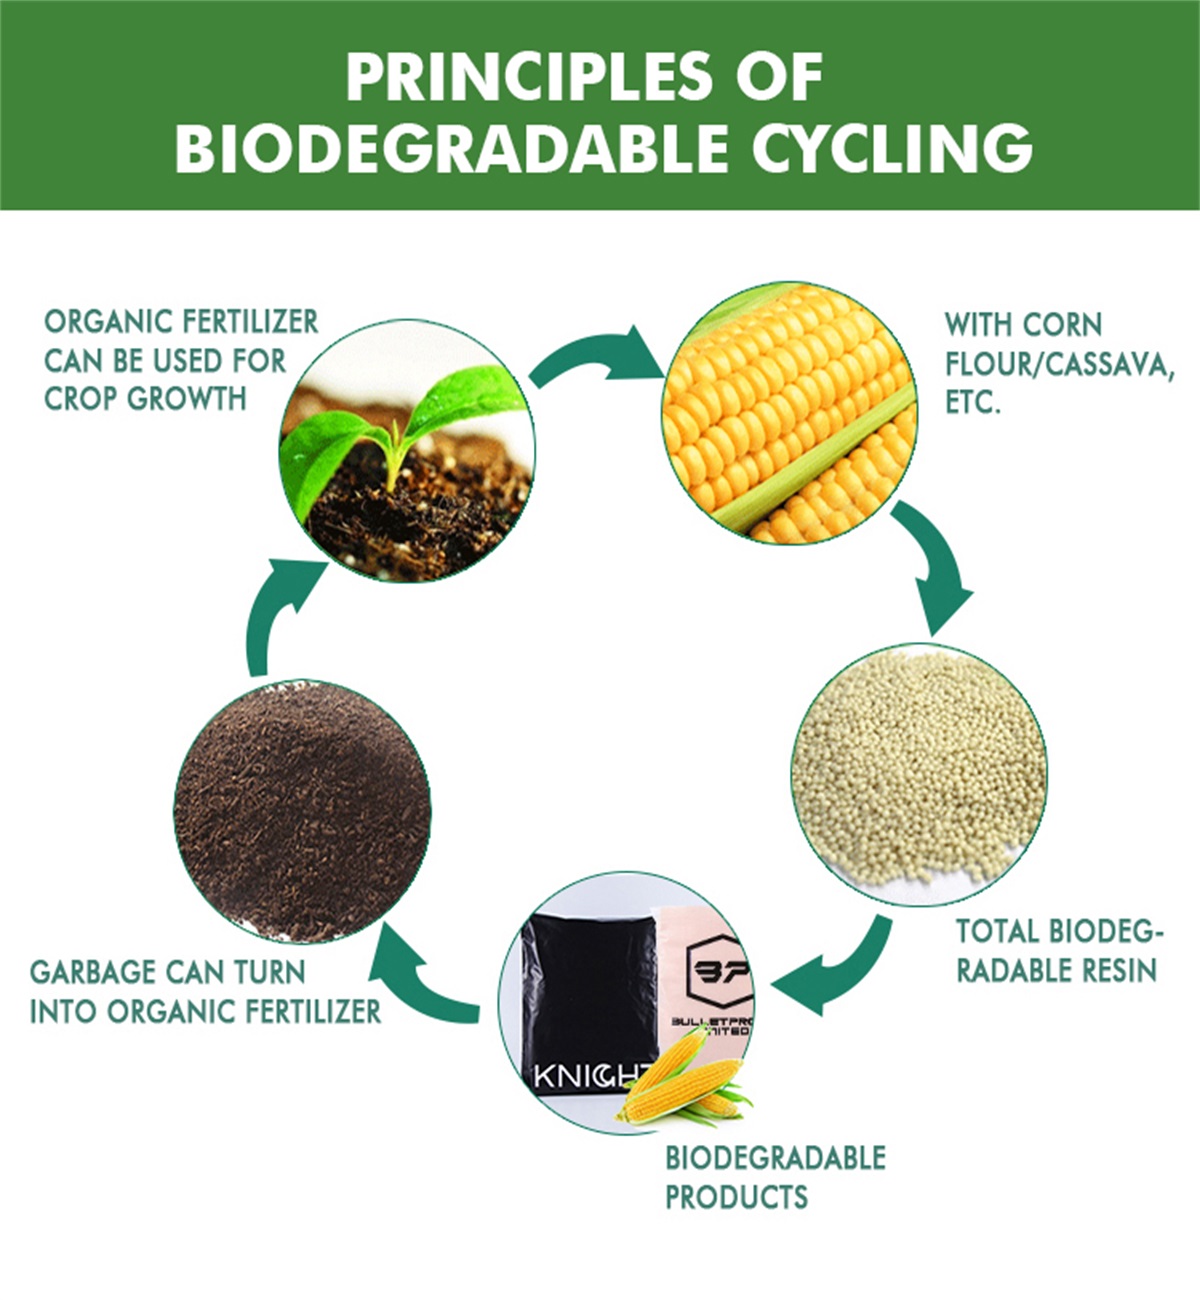 Ny fitsipiky ny fitaovana biodegradable